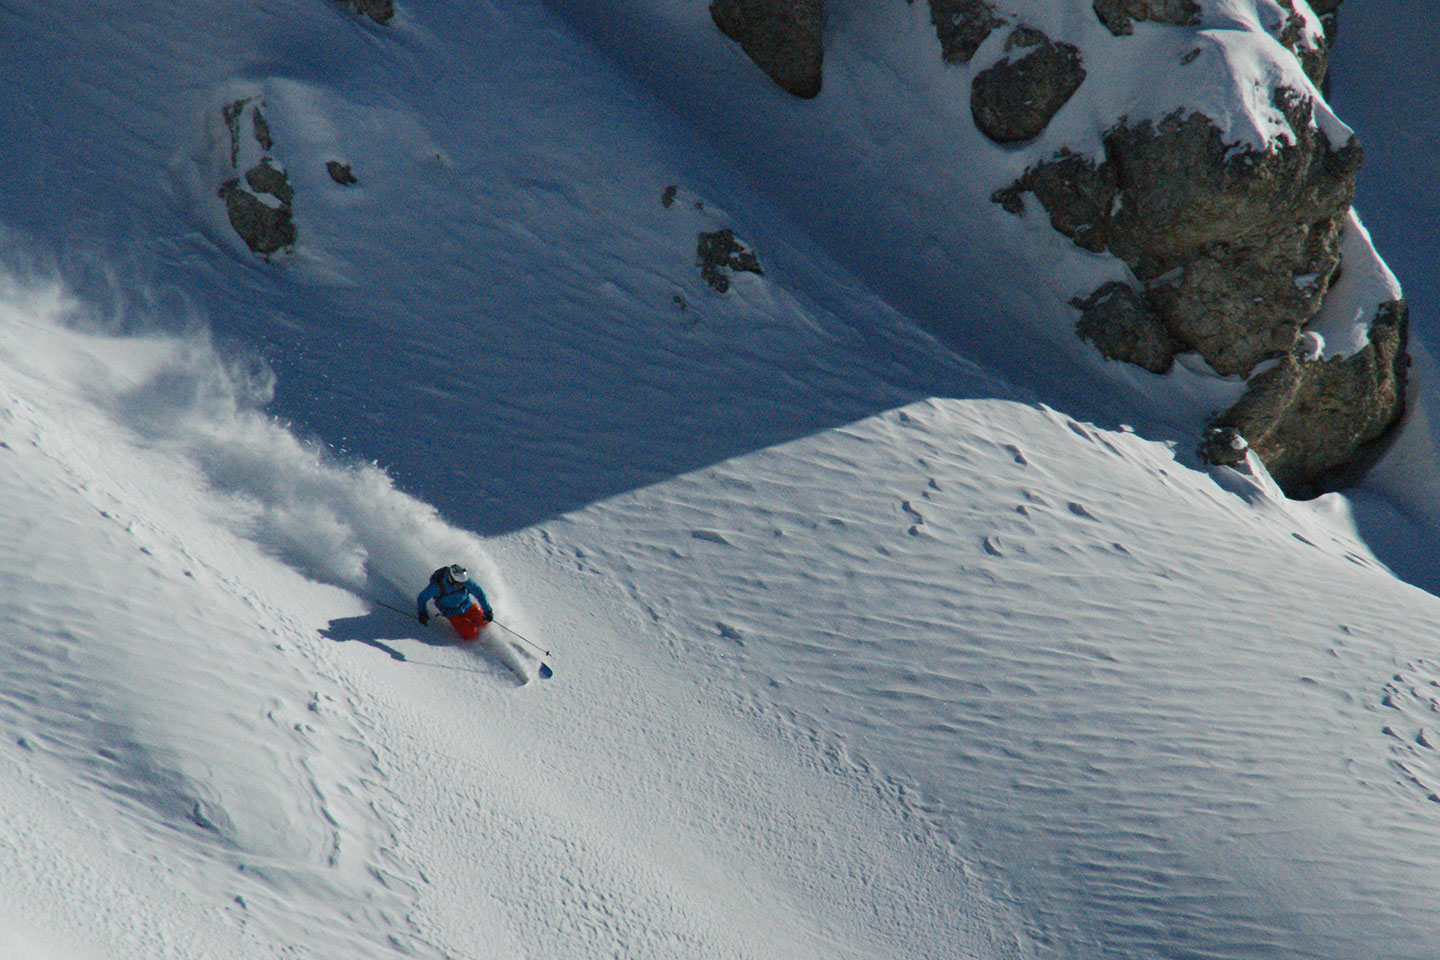 Sci Freeride a Cortina d'Ampezzo, Escursioni e Corsi di Sci Fuoripista